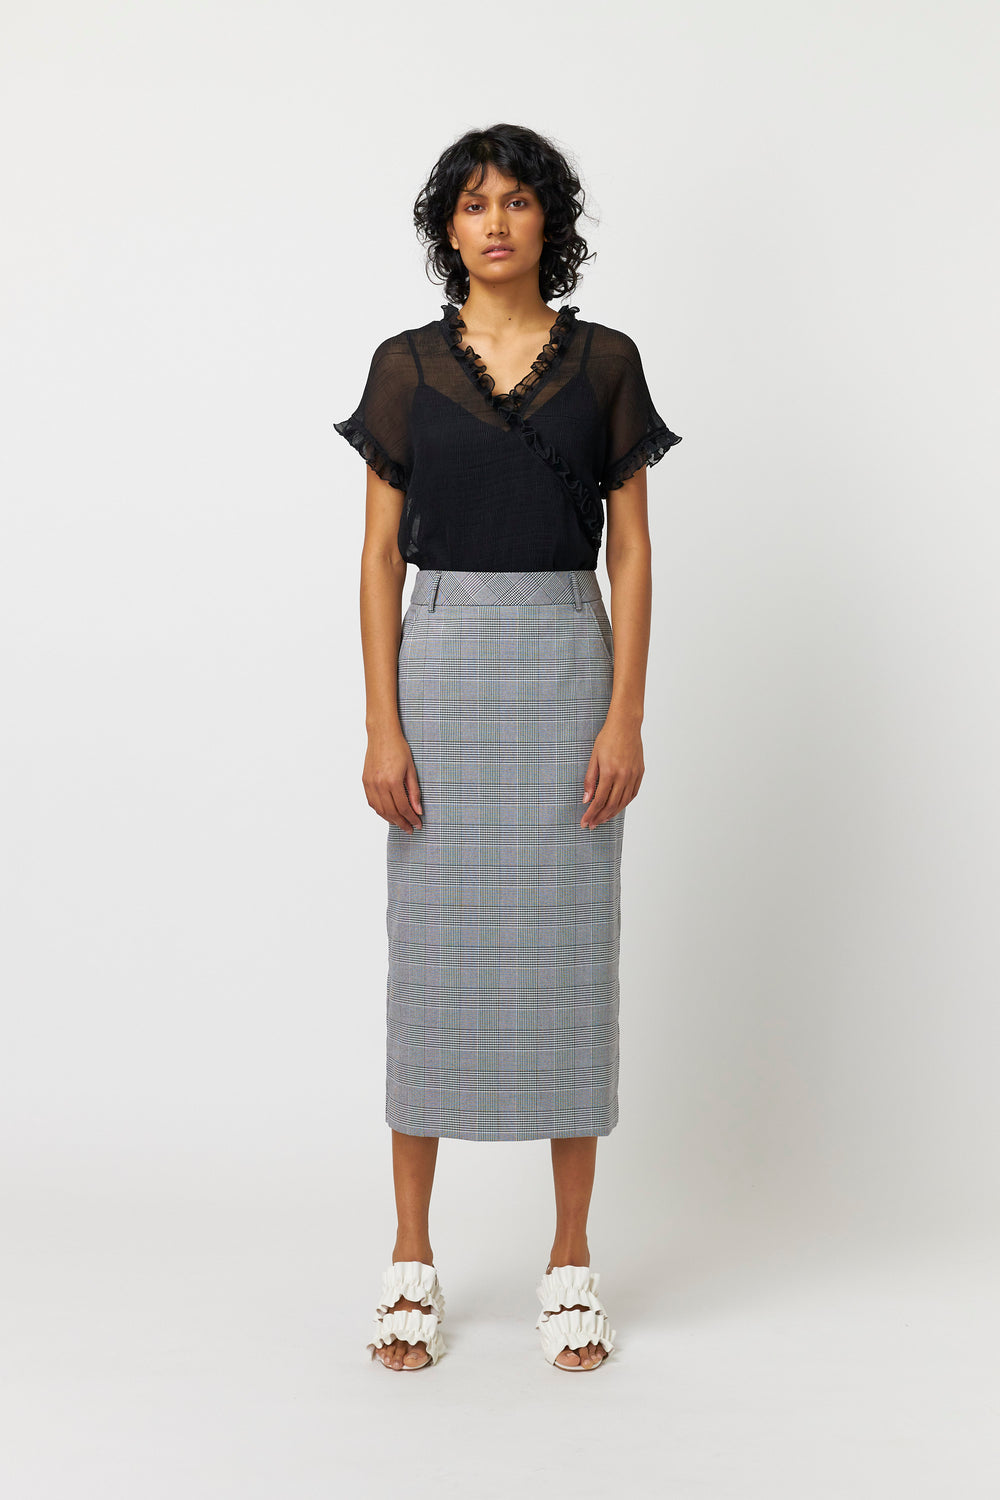 Anya skirt